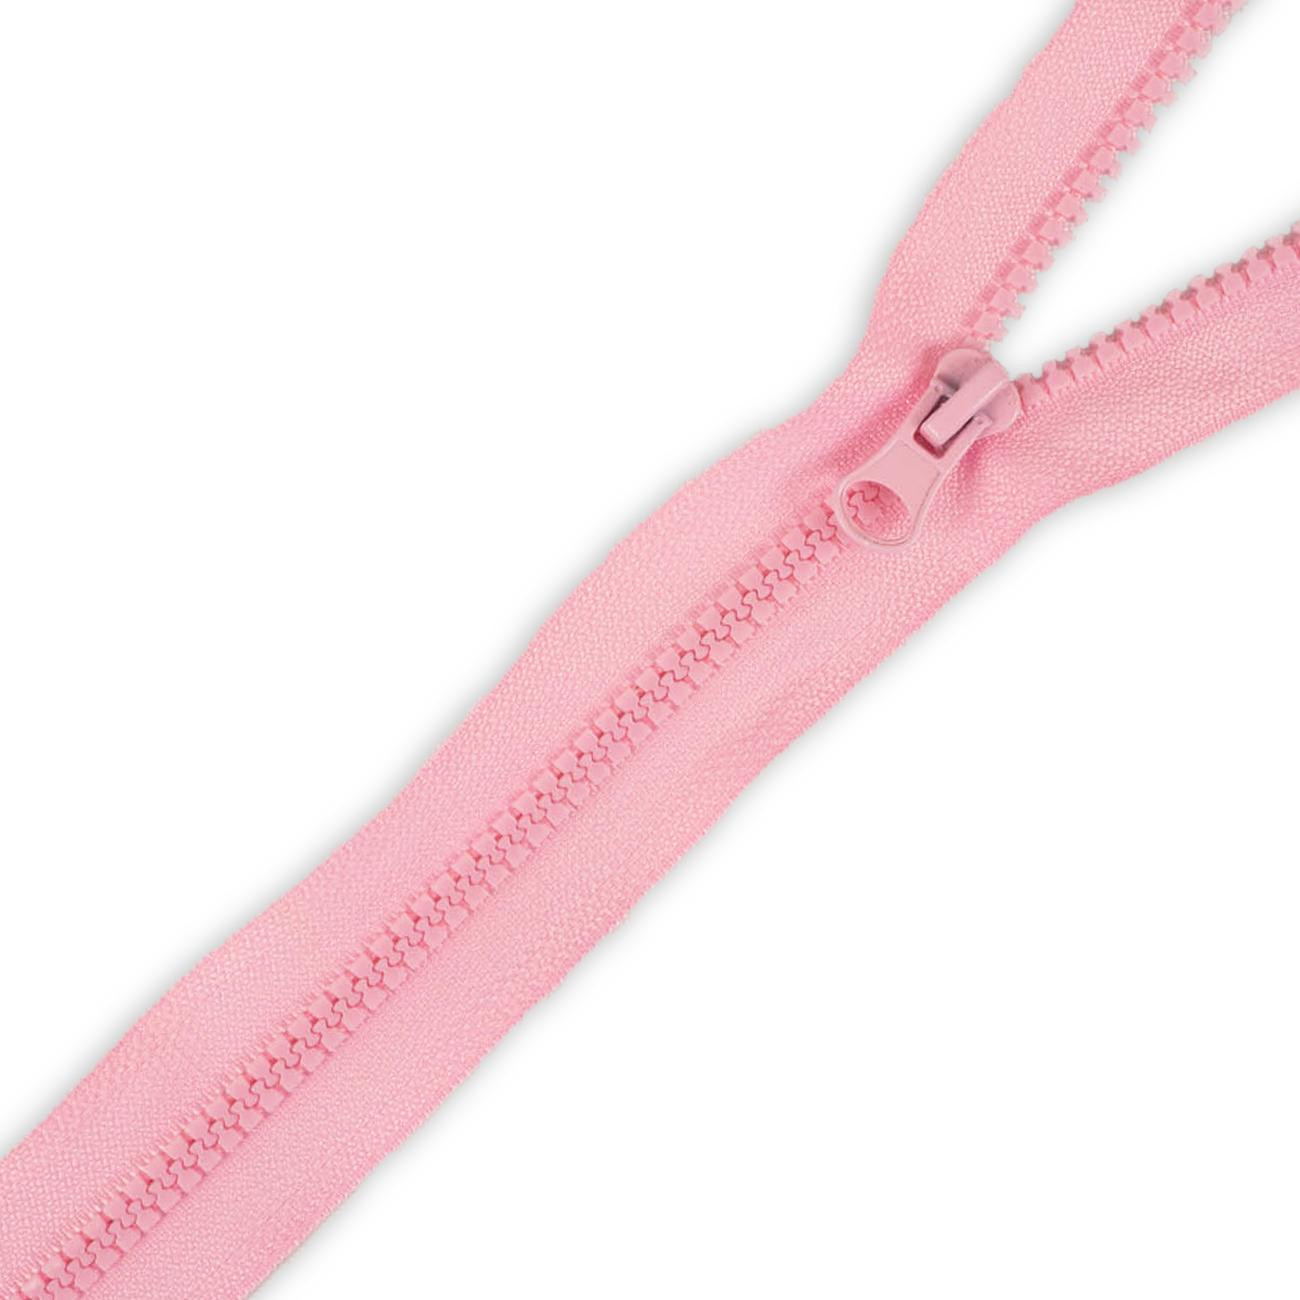 Kostěný zip 65cm dělitelný(z) - růžový